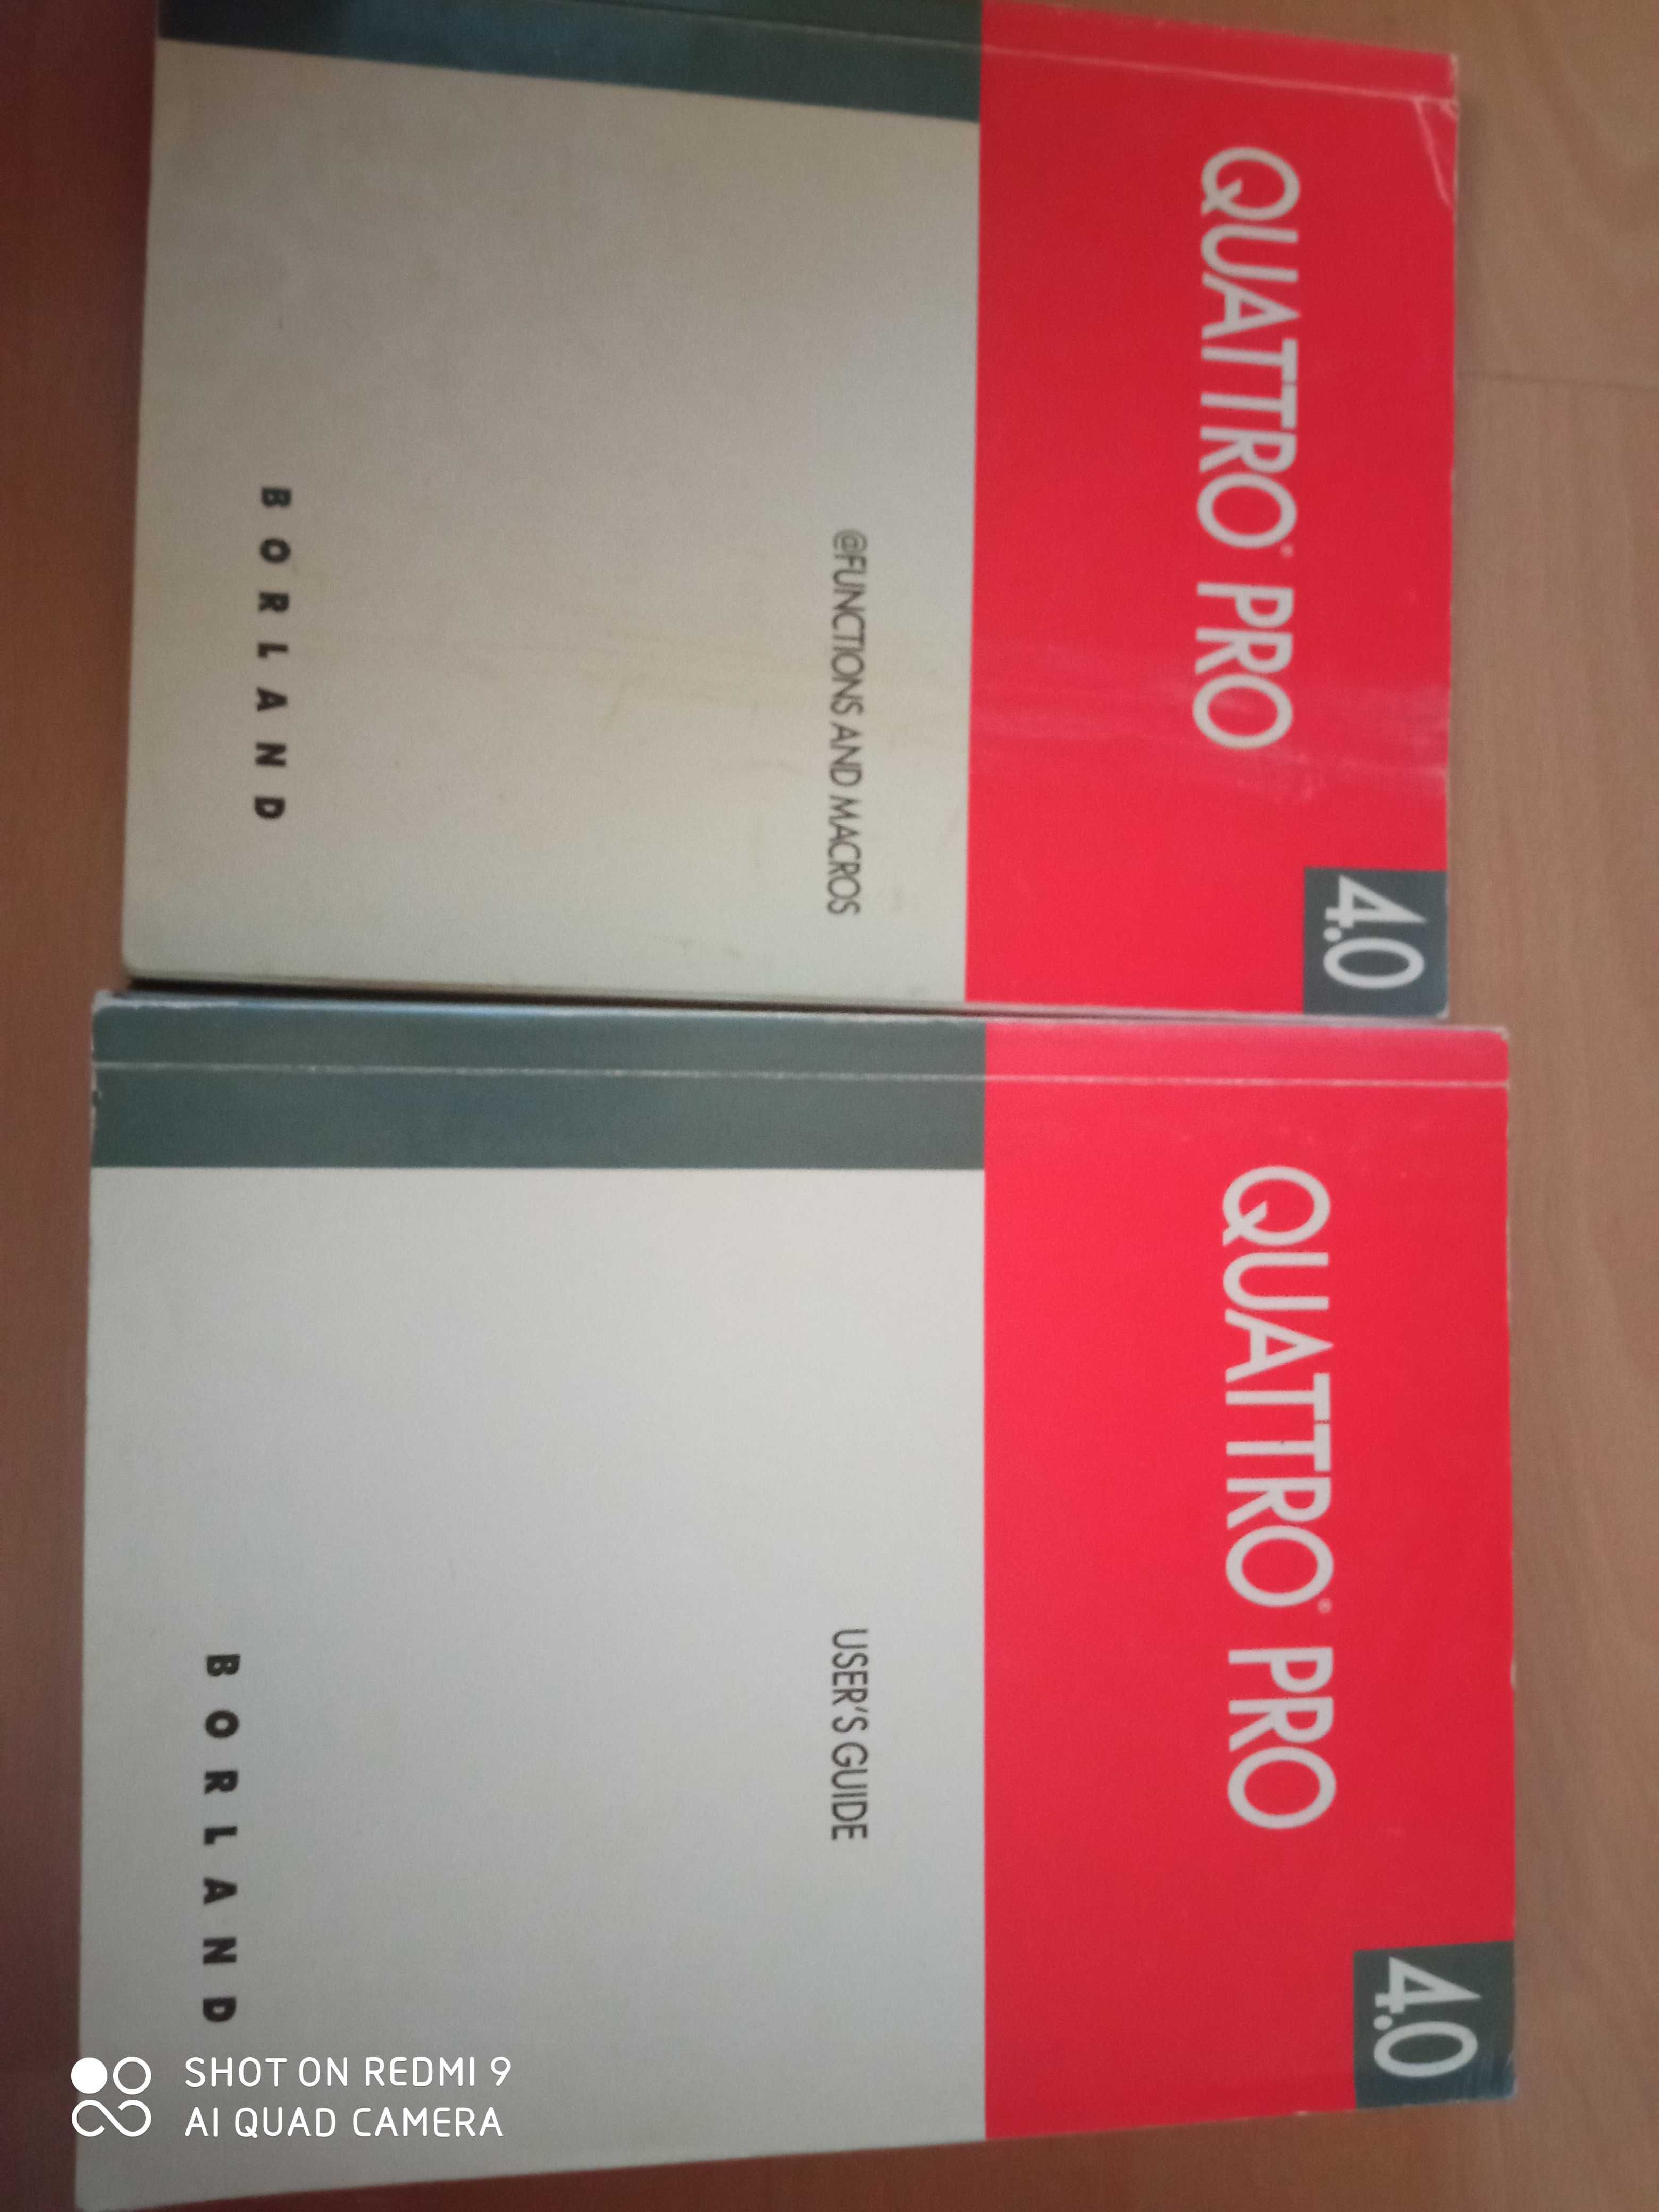 Książka QUATRO PRO 4.0 2 szt w języku angielskim. System Borland